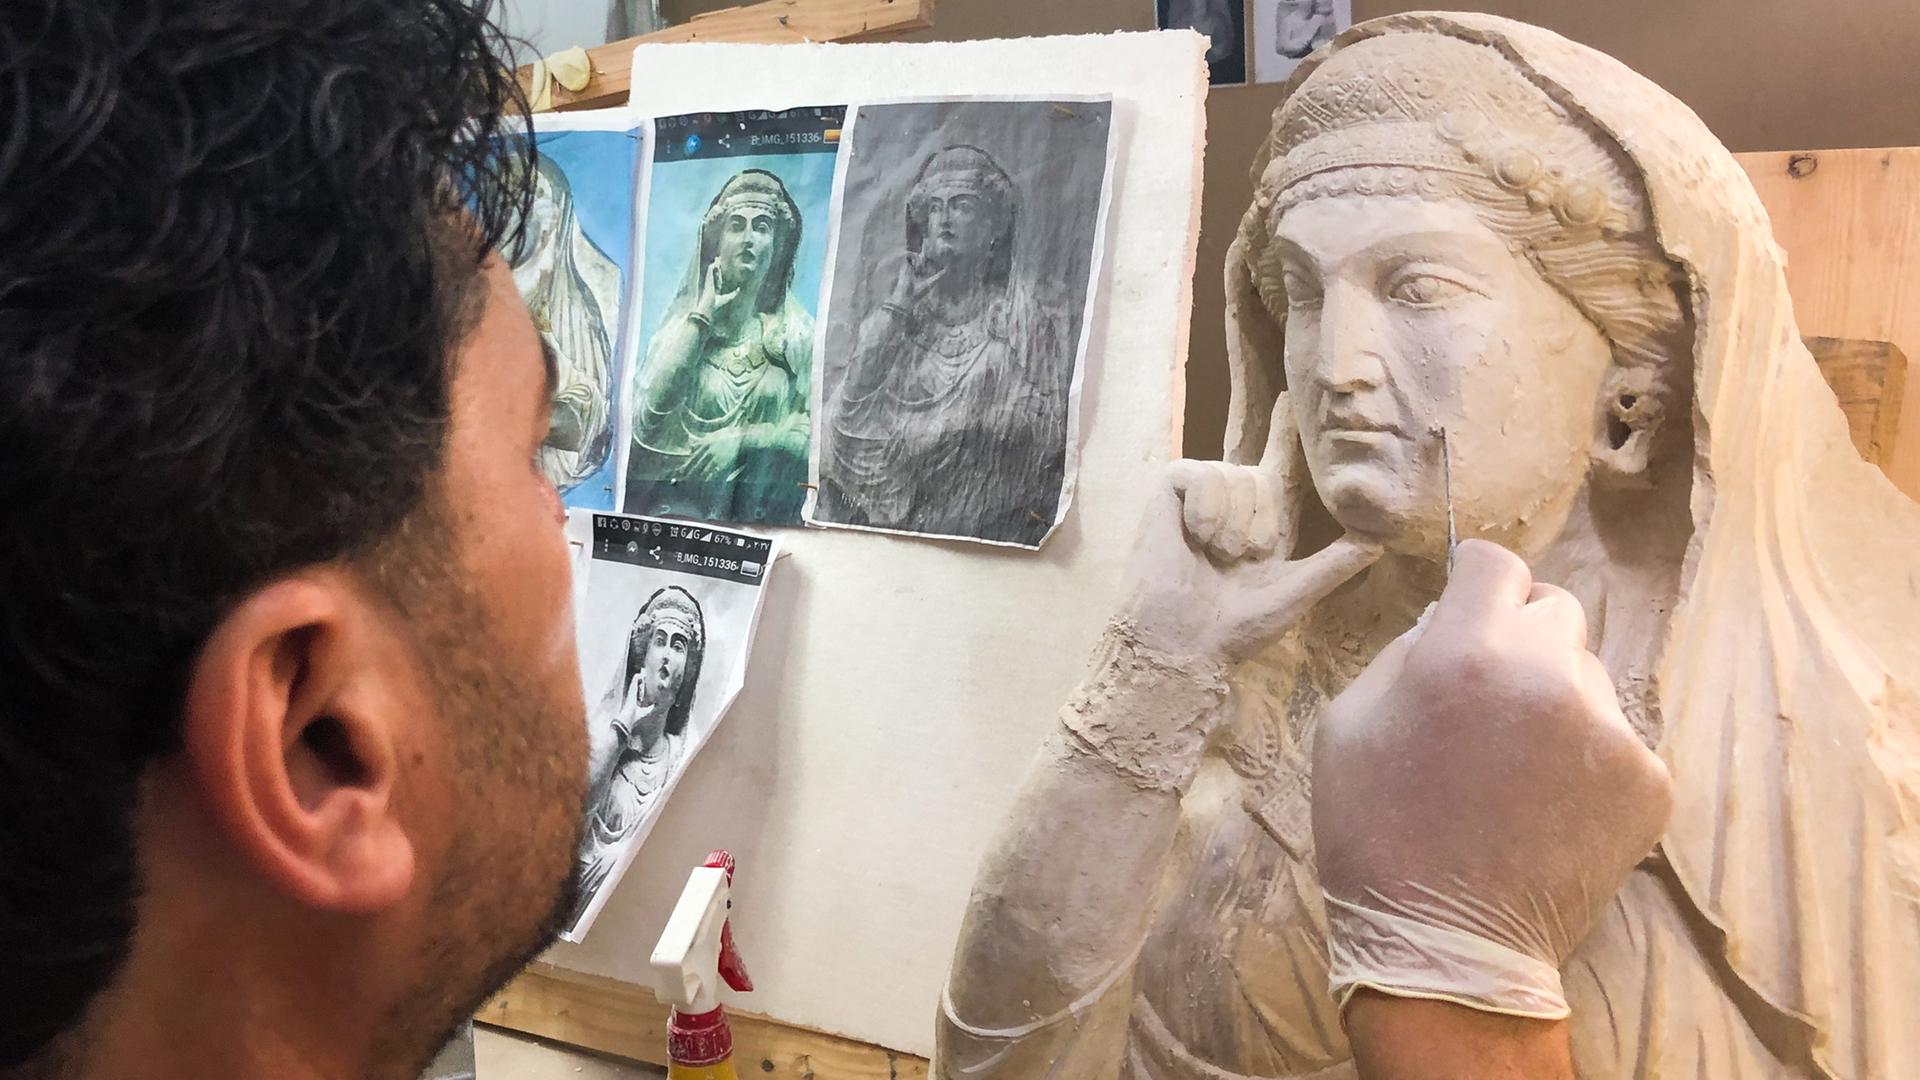 Ein Kunstrestaurator arbeitet an einem alten Basrelief aus Palmyra, das von Mitgliedern des IS zerstört wurde.